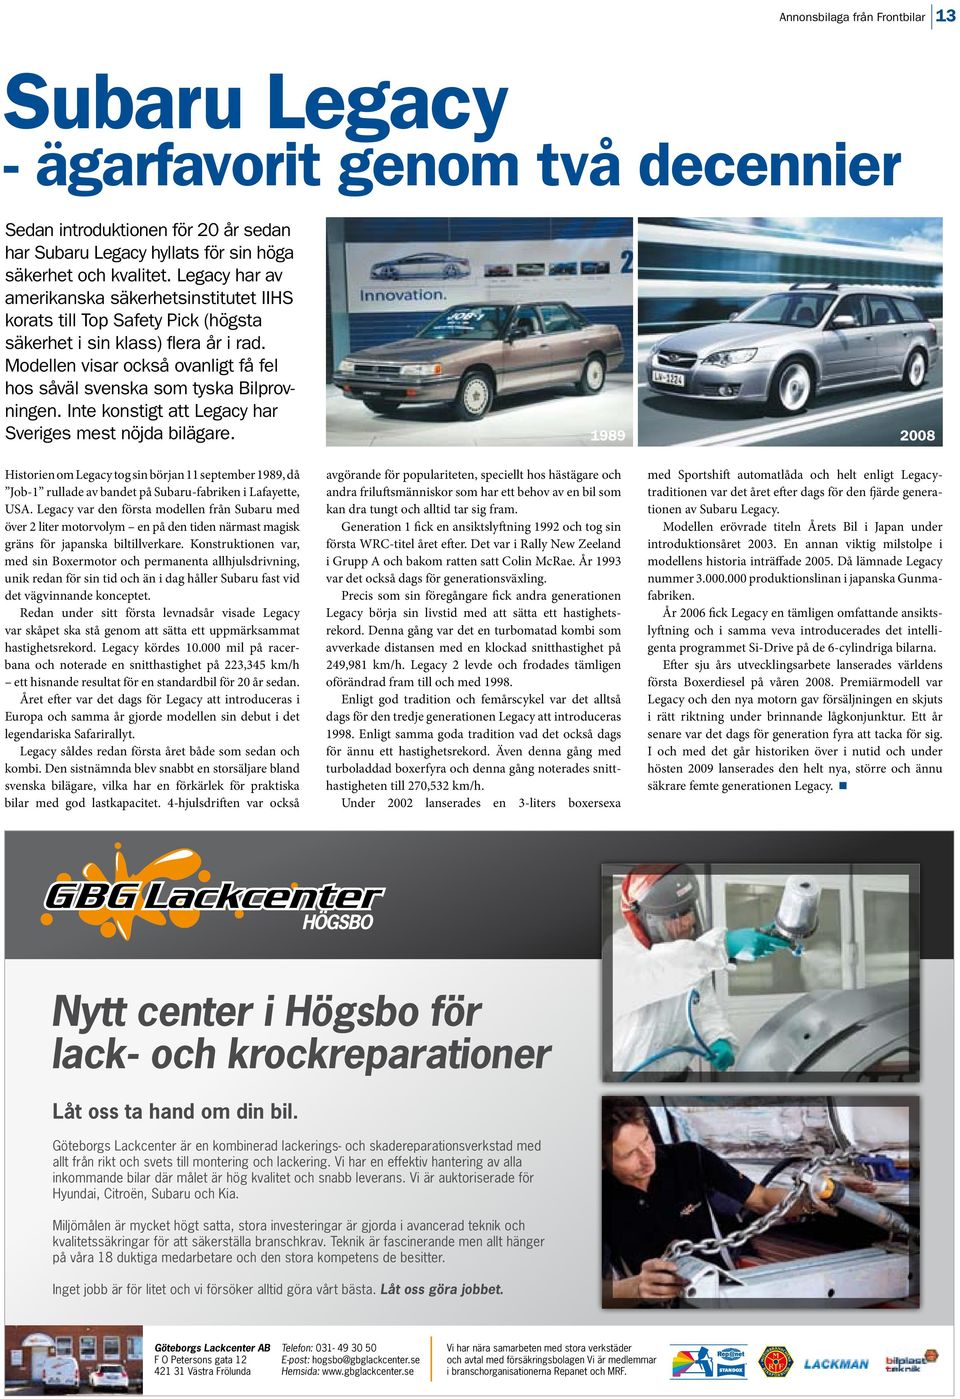 Modellen visar också ovanligt få fel hos såväl svenska som tyska Bilprovningen. Inte konstigt att Legacy har Sveriges mest nöjda bilägare.